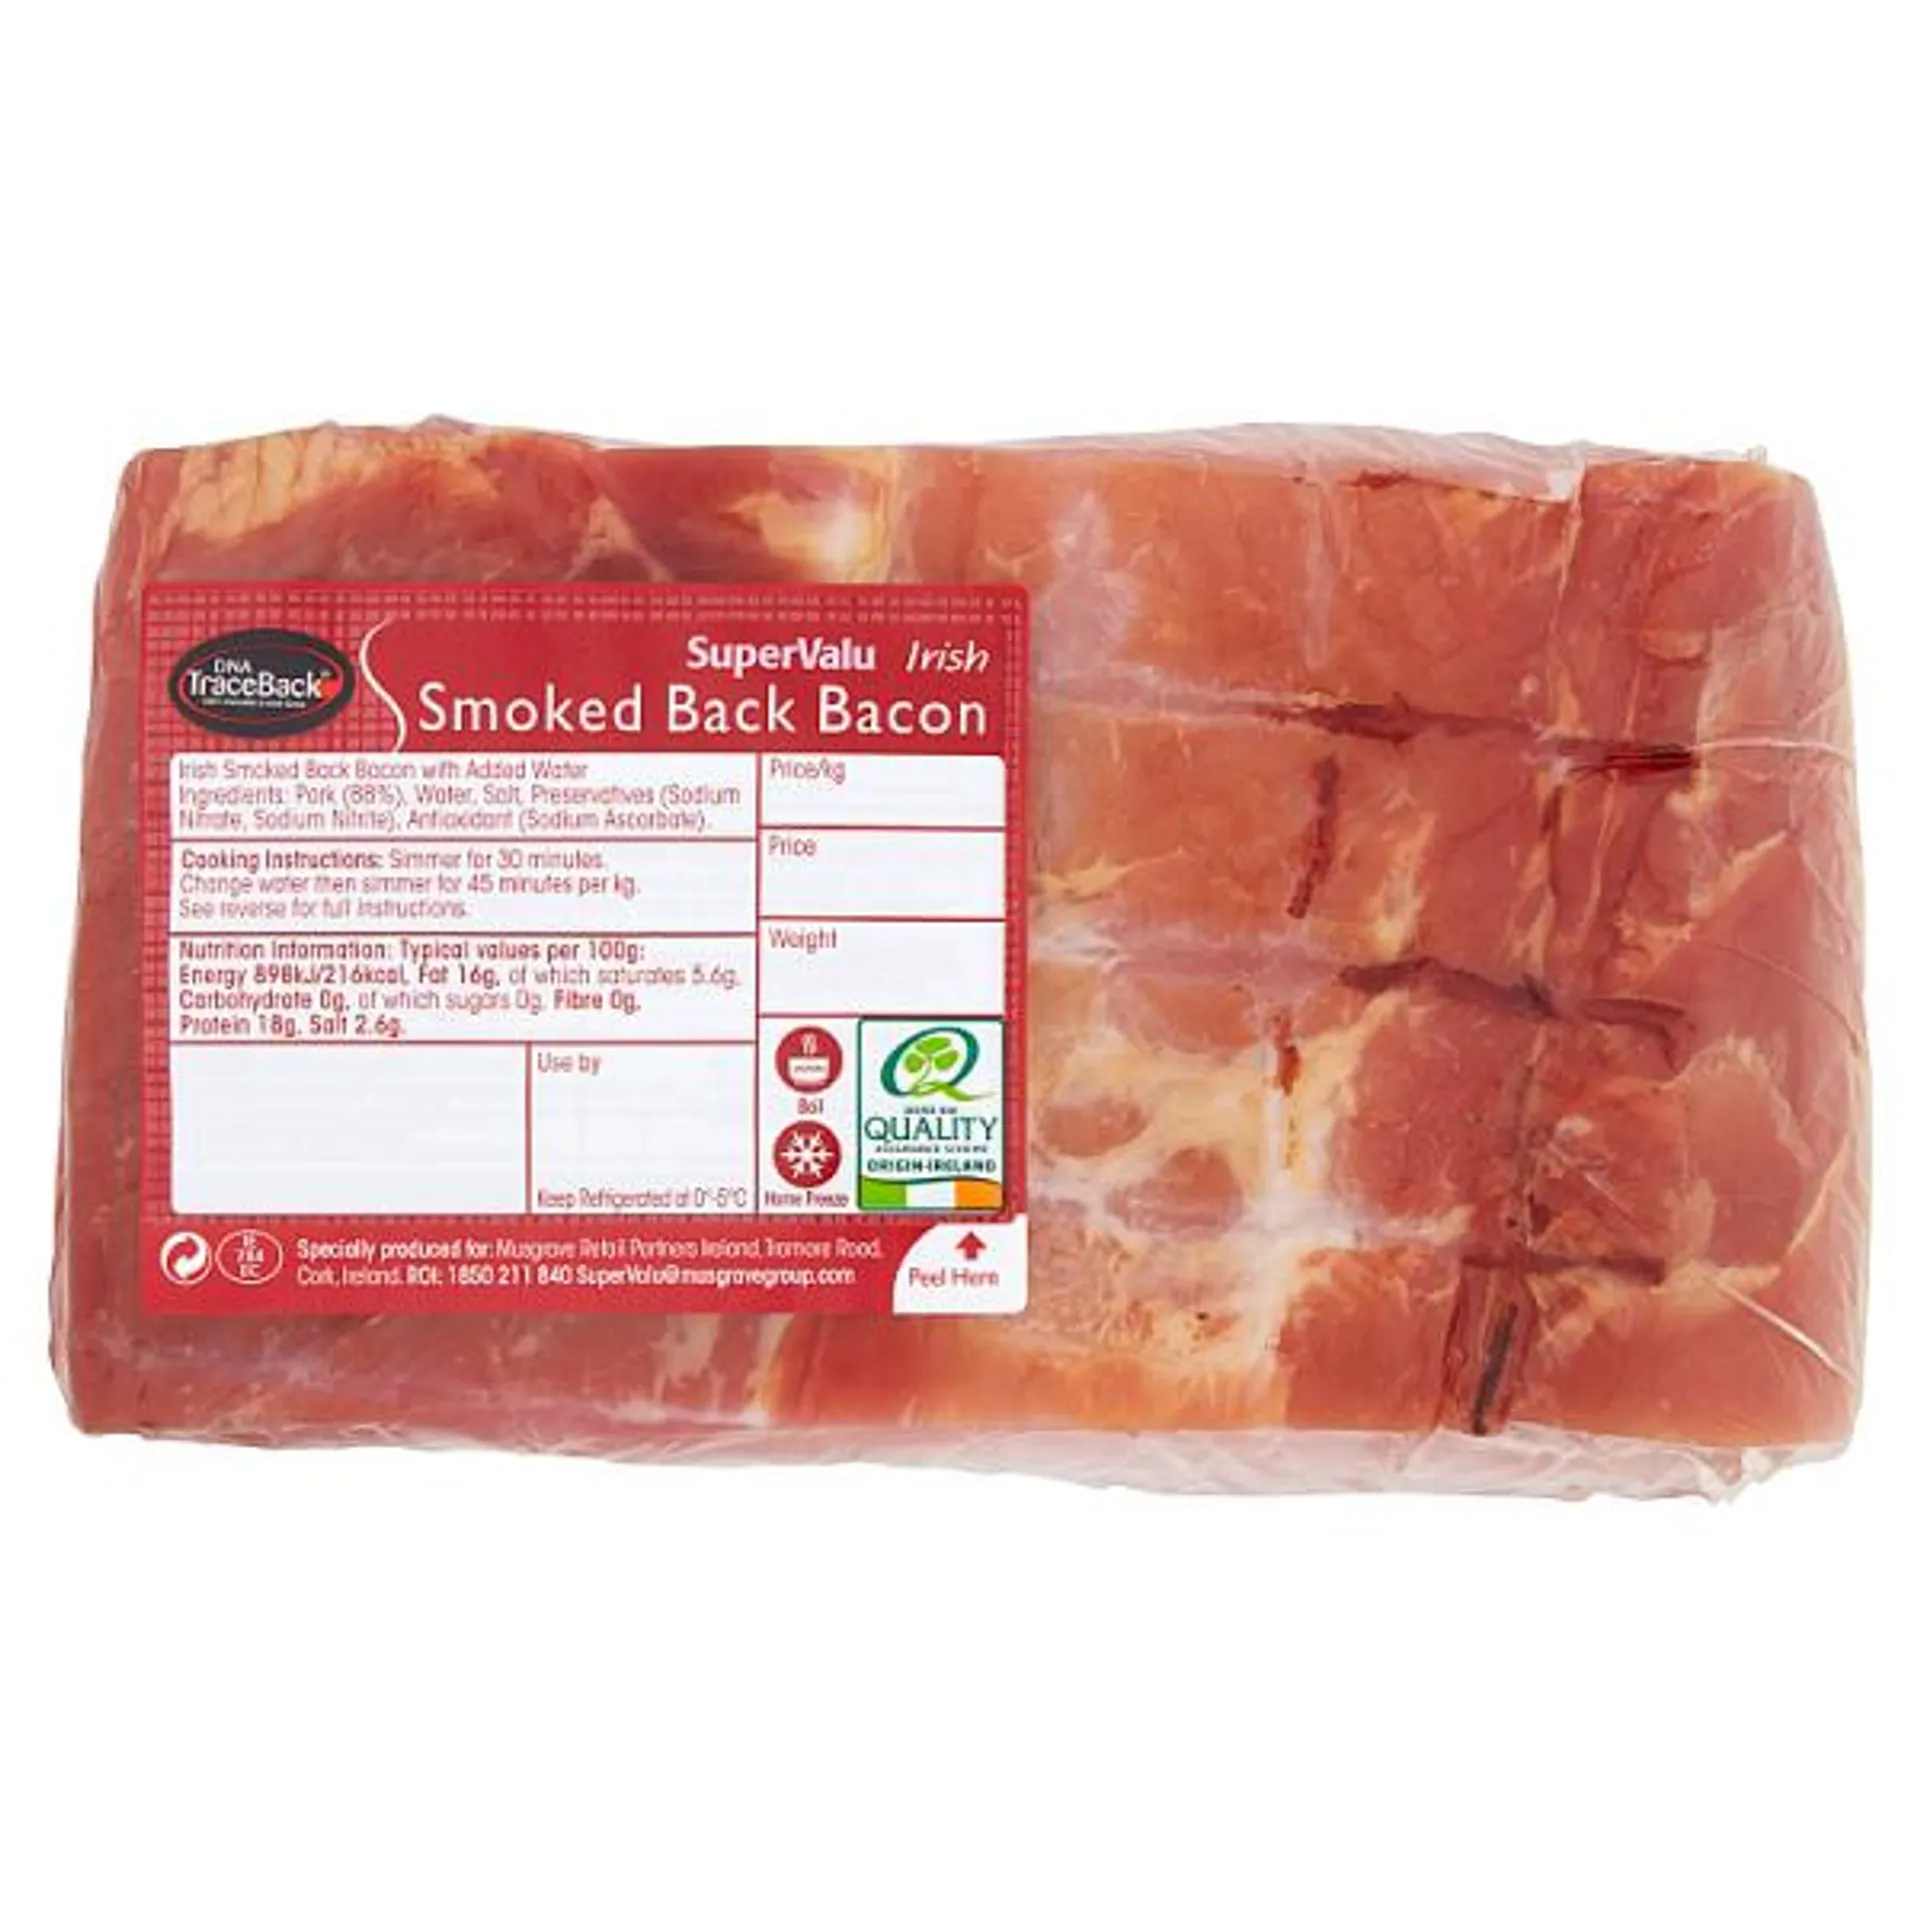 SuperValu Irish Smoked Back Bacon Joint Promo (1 kg)